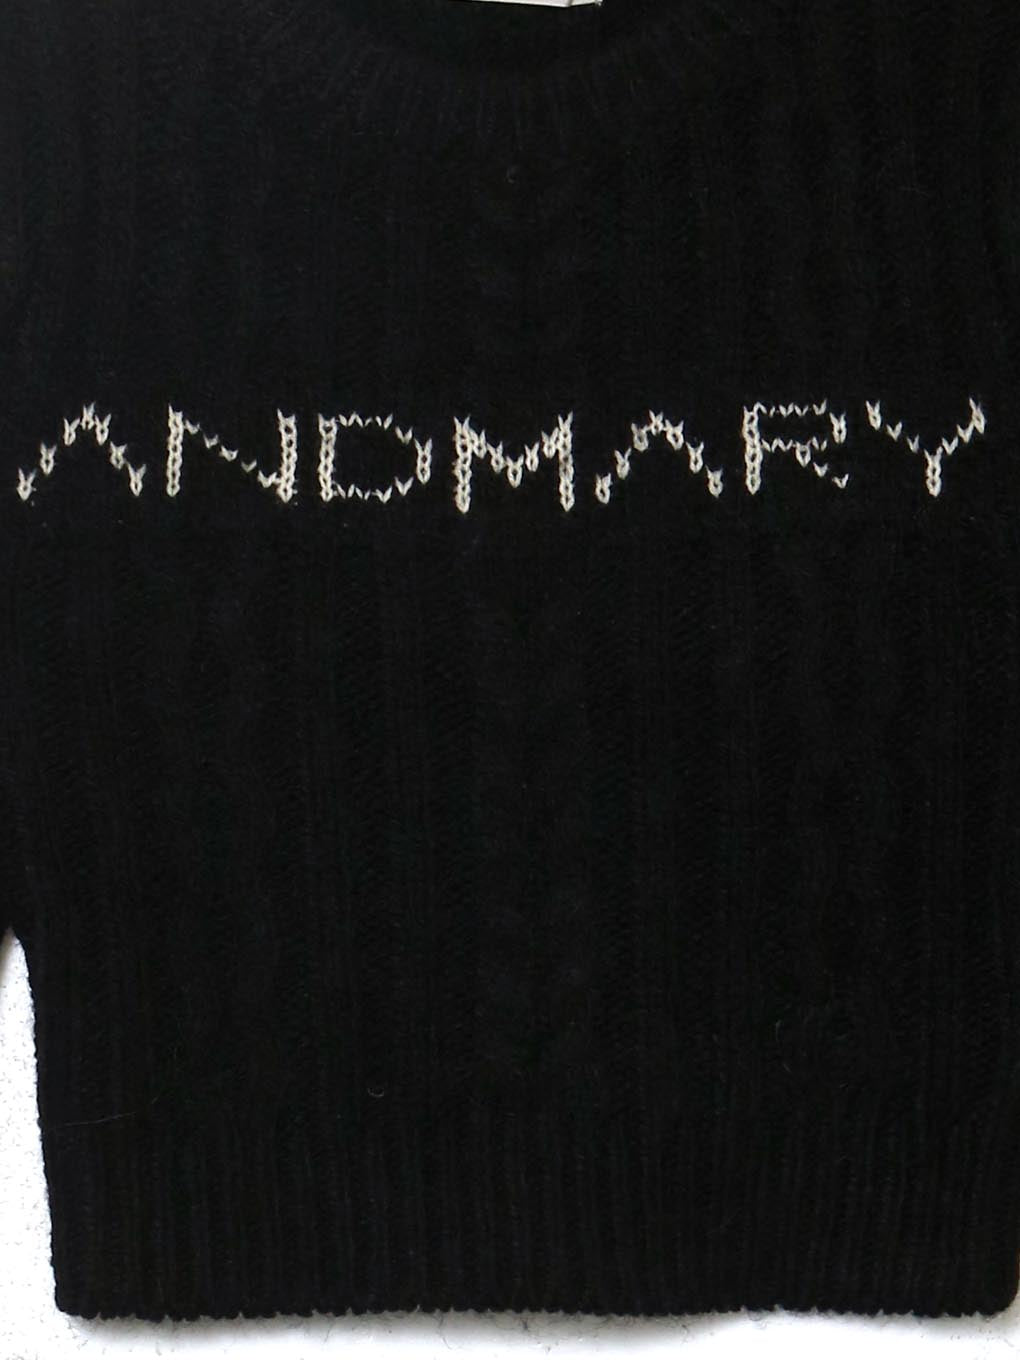 再販なしの完売品ですAndmary Marie knit set up beige 即日発送